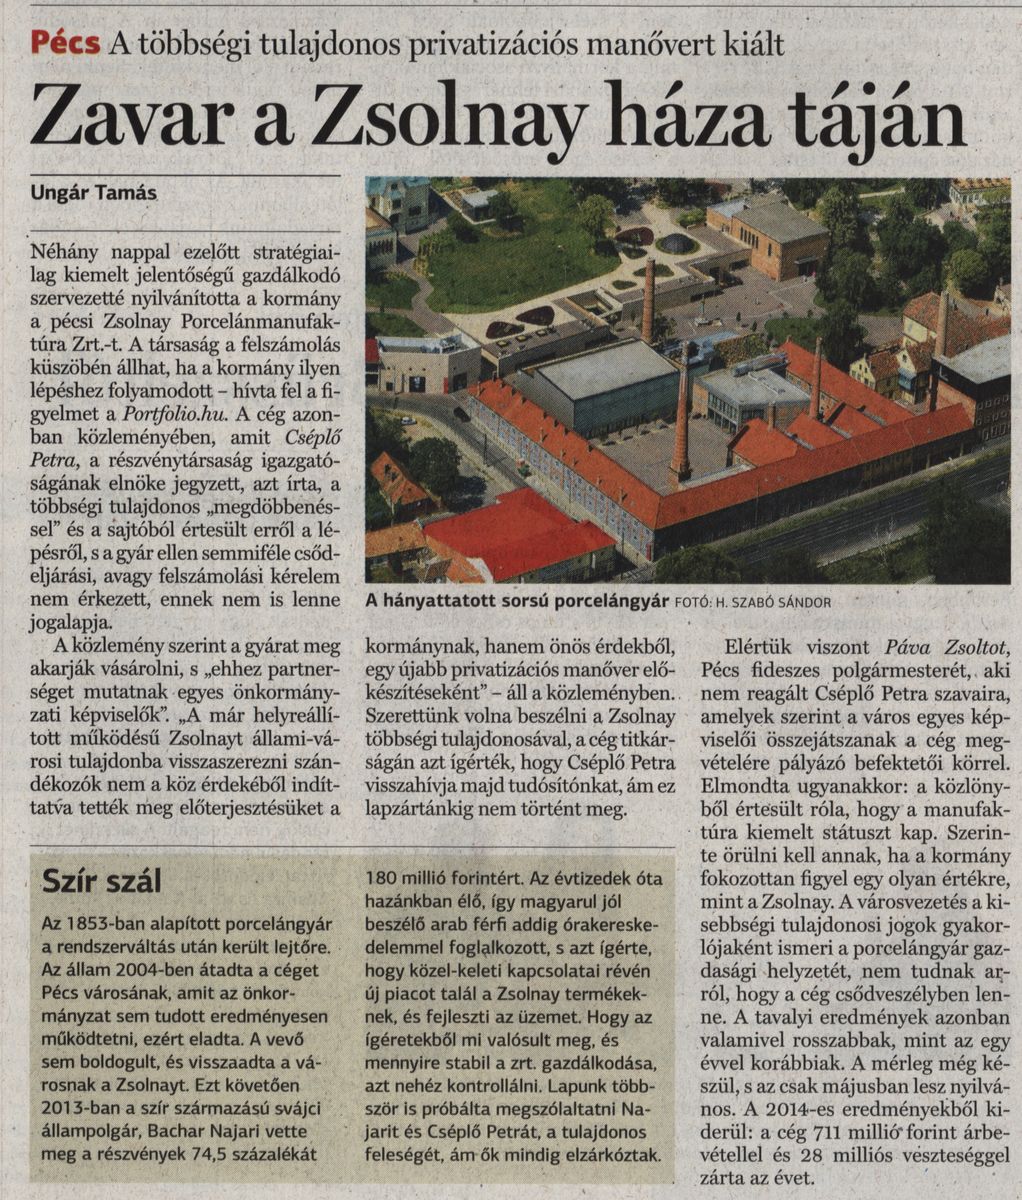 Zavar a Zsolnay háza táján Pécs. A többségi tulajdonos privatizációs manővert kiált